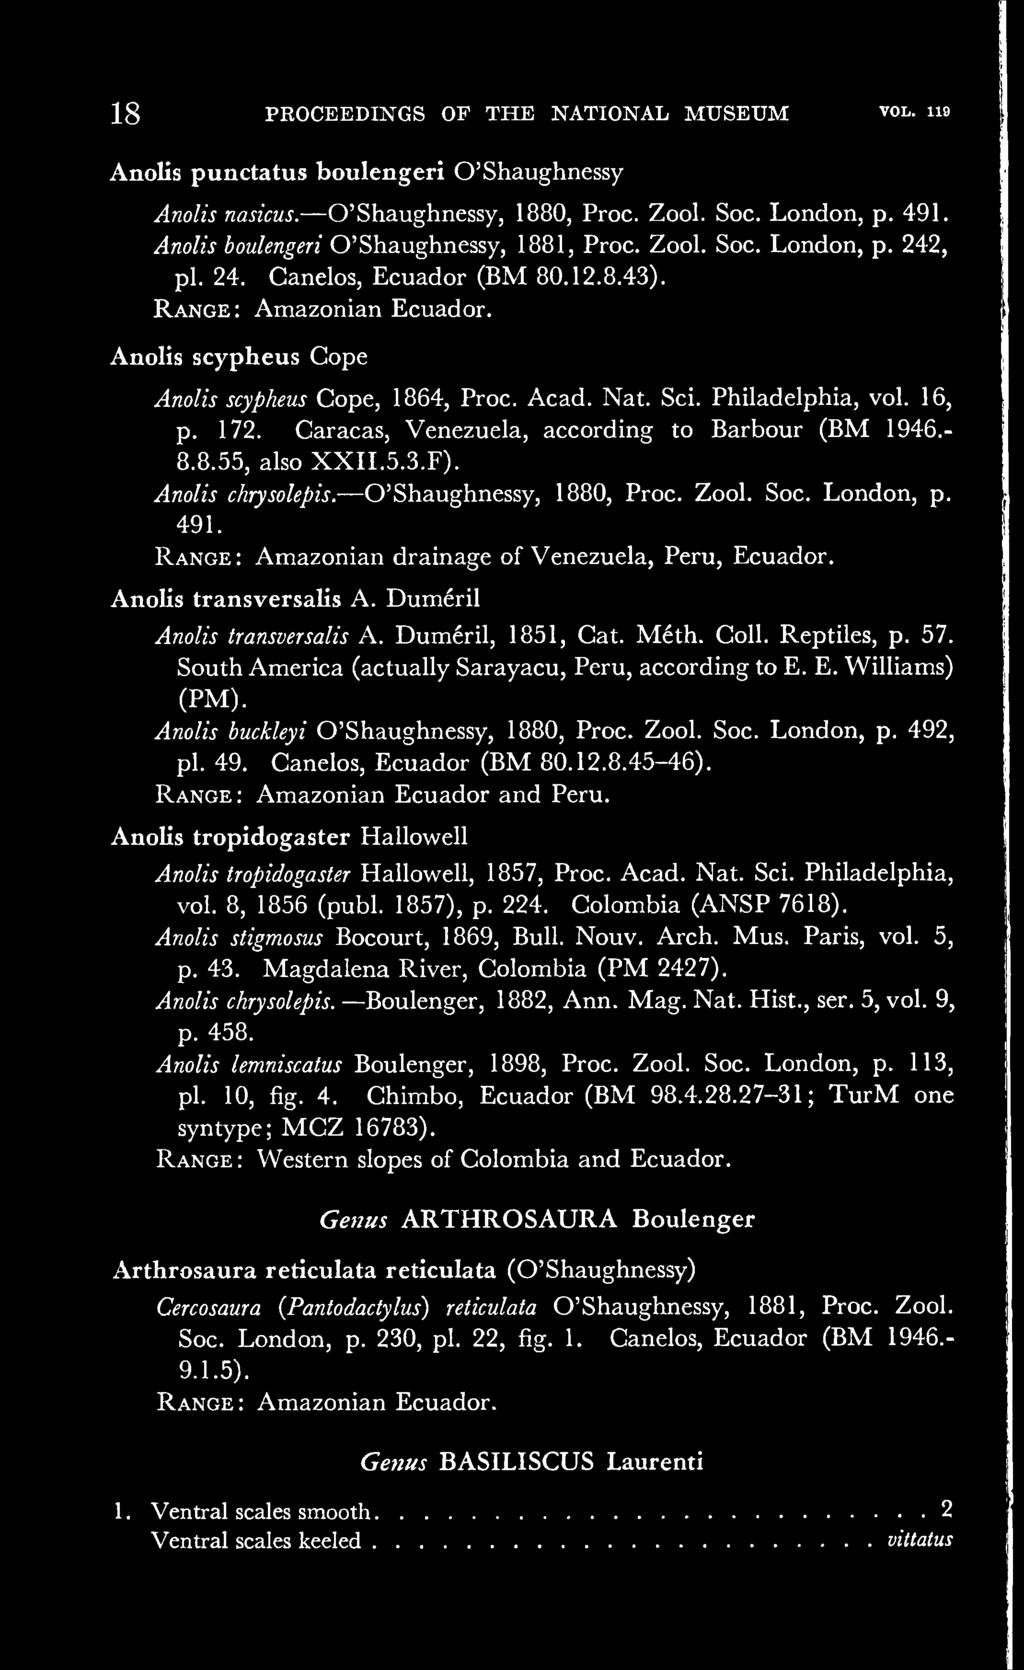 South America (actually Sarayacu, Peru, according to E. E. Williams) (PM). Anolis buckleyi O'Shaughnessy, 1880, Proc. Zool. Soc. London, p. 492, pi. 49. Canelos, Ecuador (BM 80.12.8.45-46).